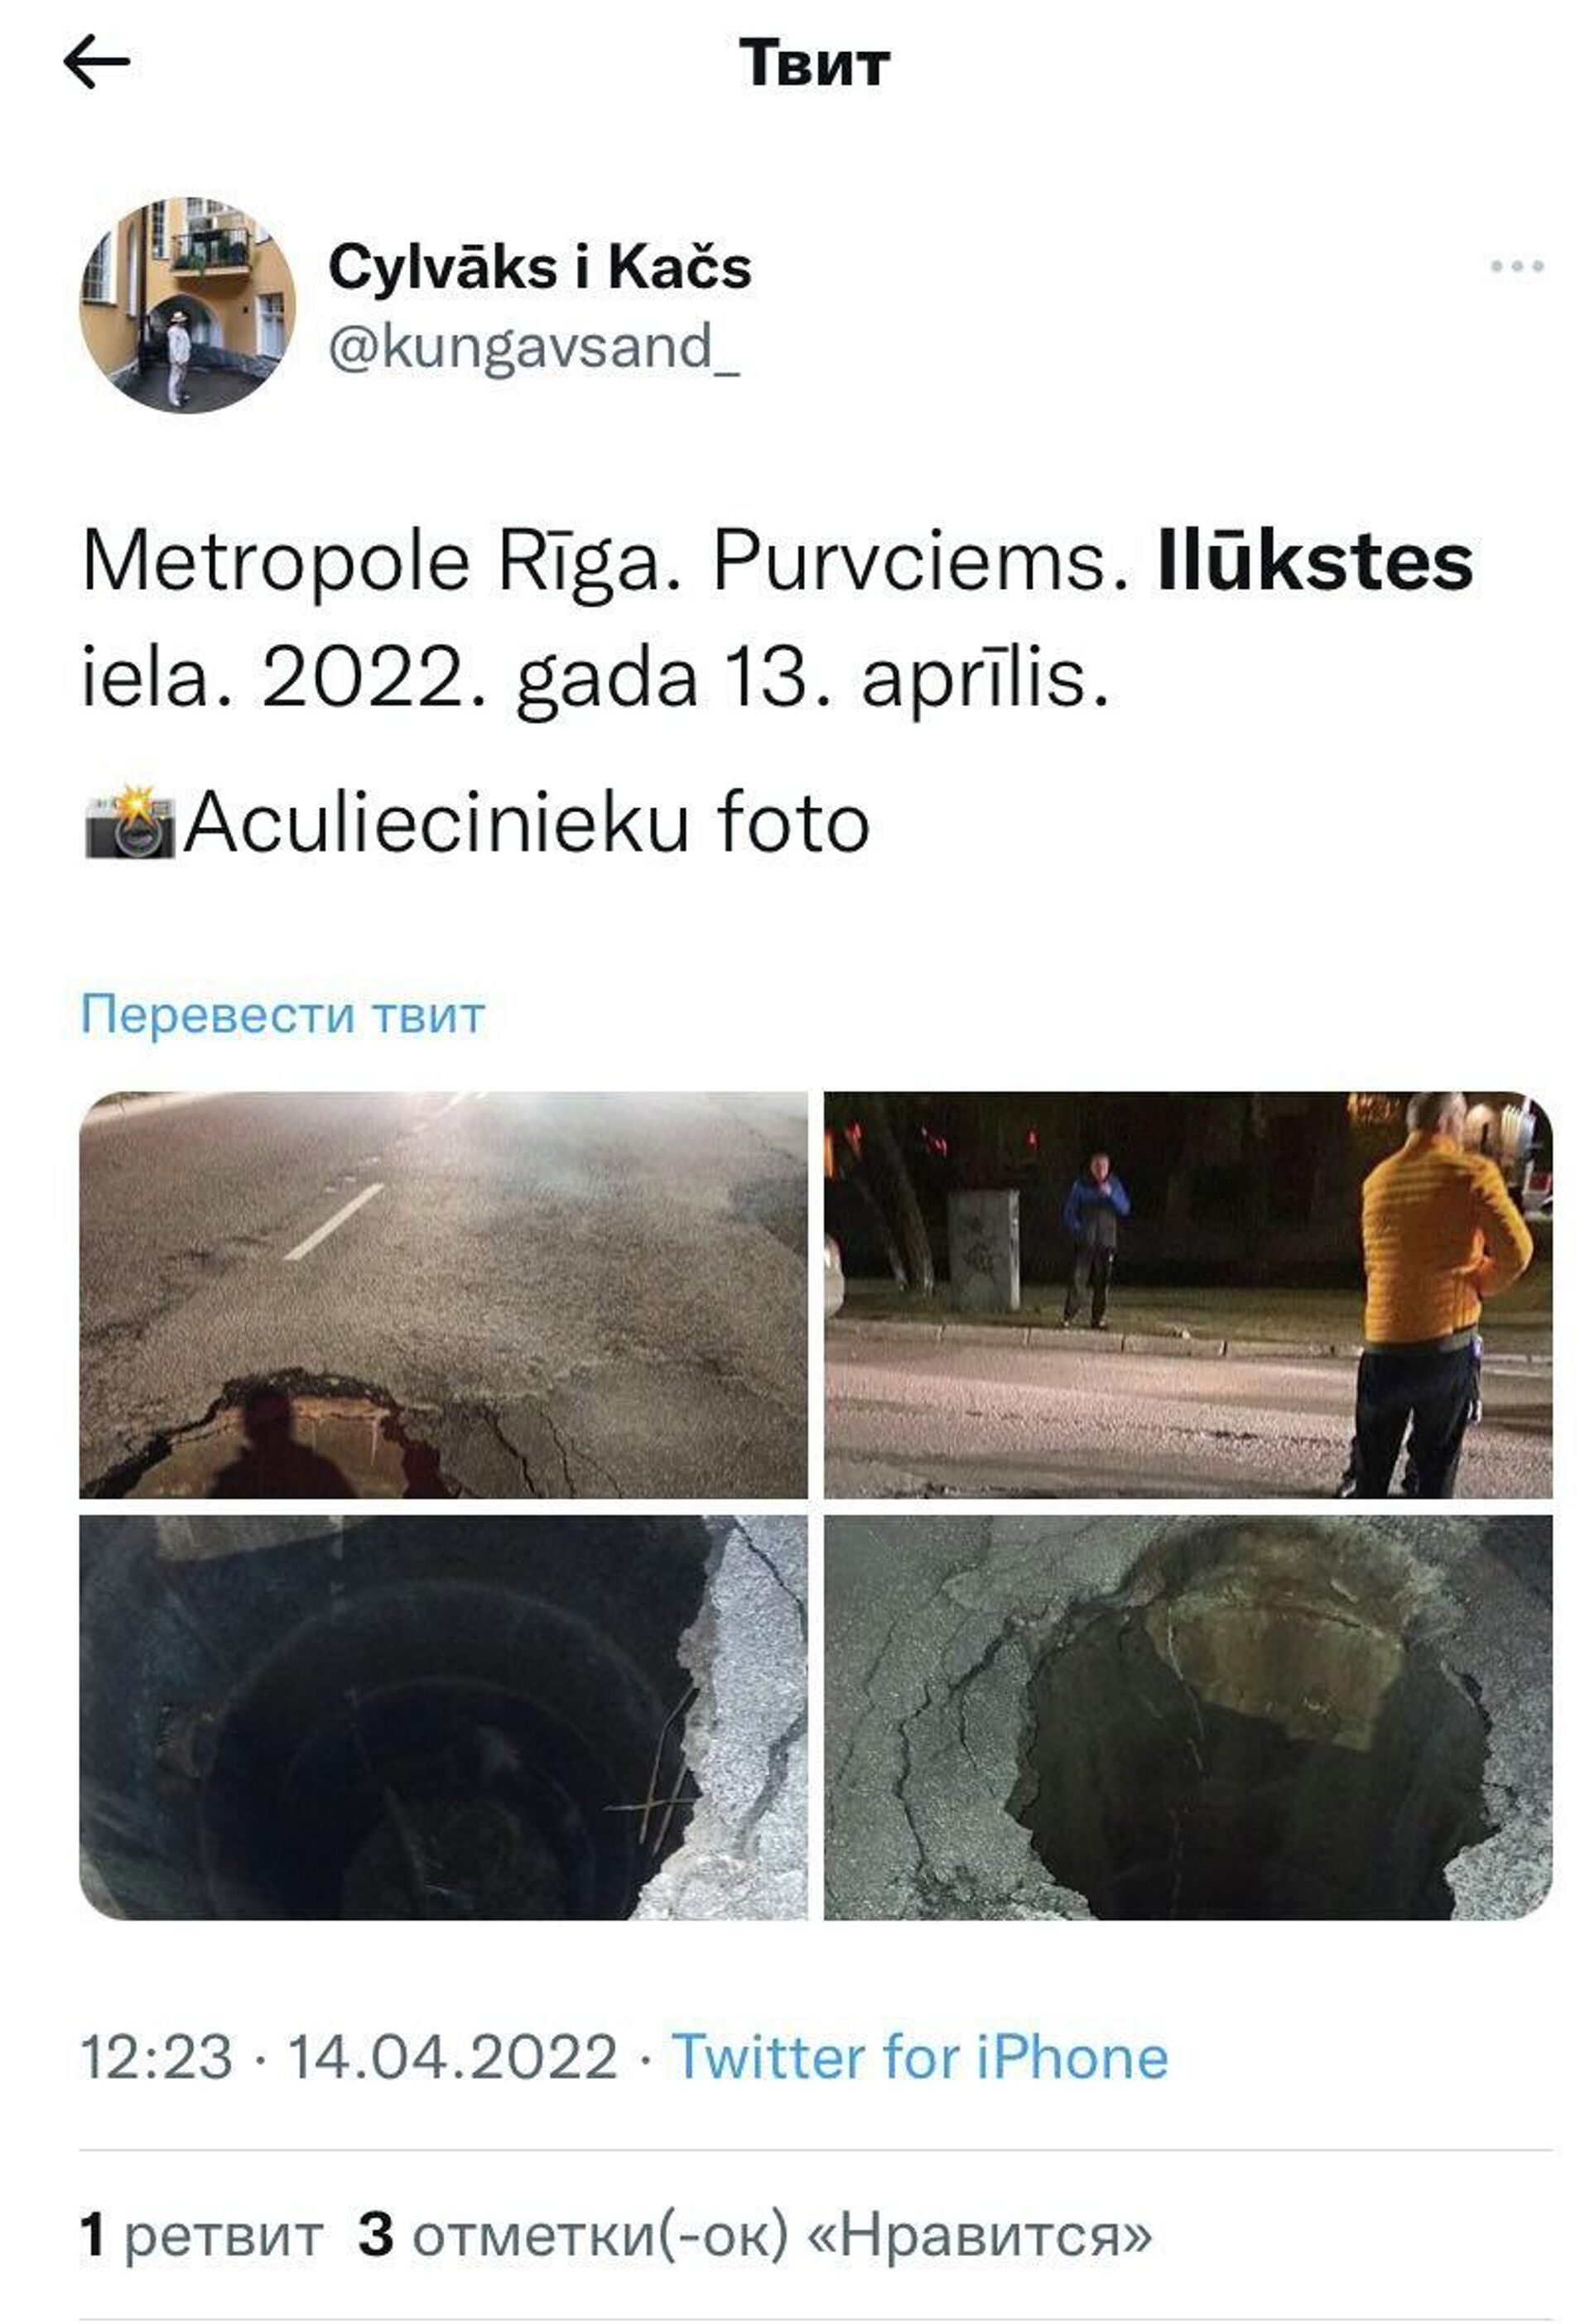 Скриншот поста в Twitter  - Sputnik Латвия, 1920, 15.04.2022